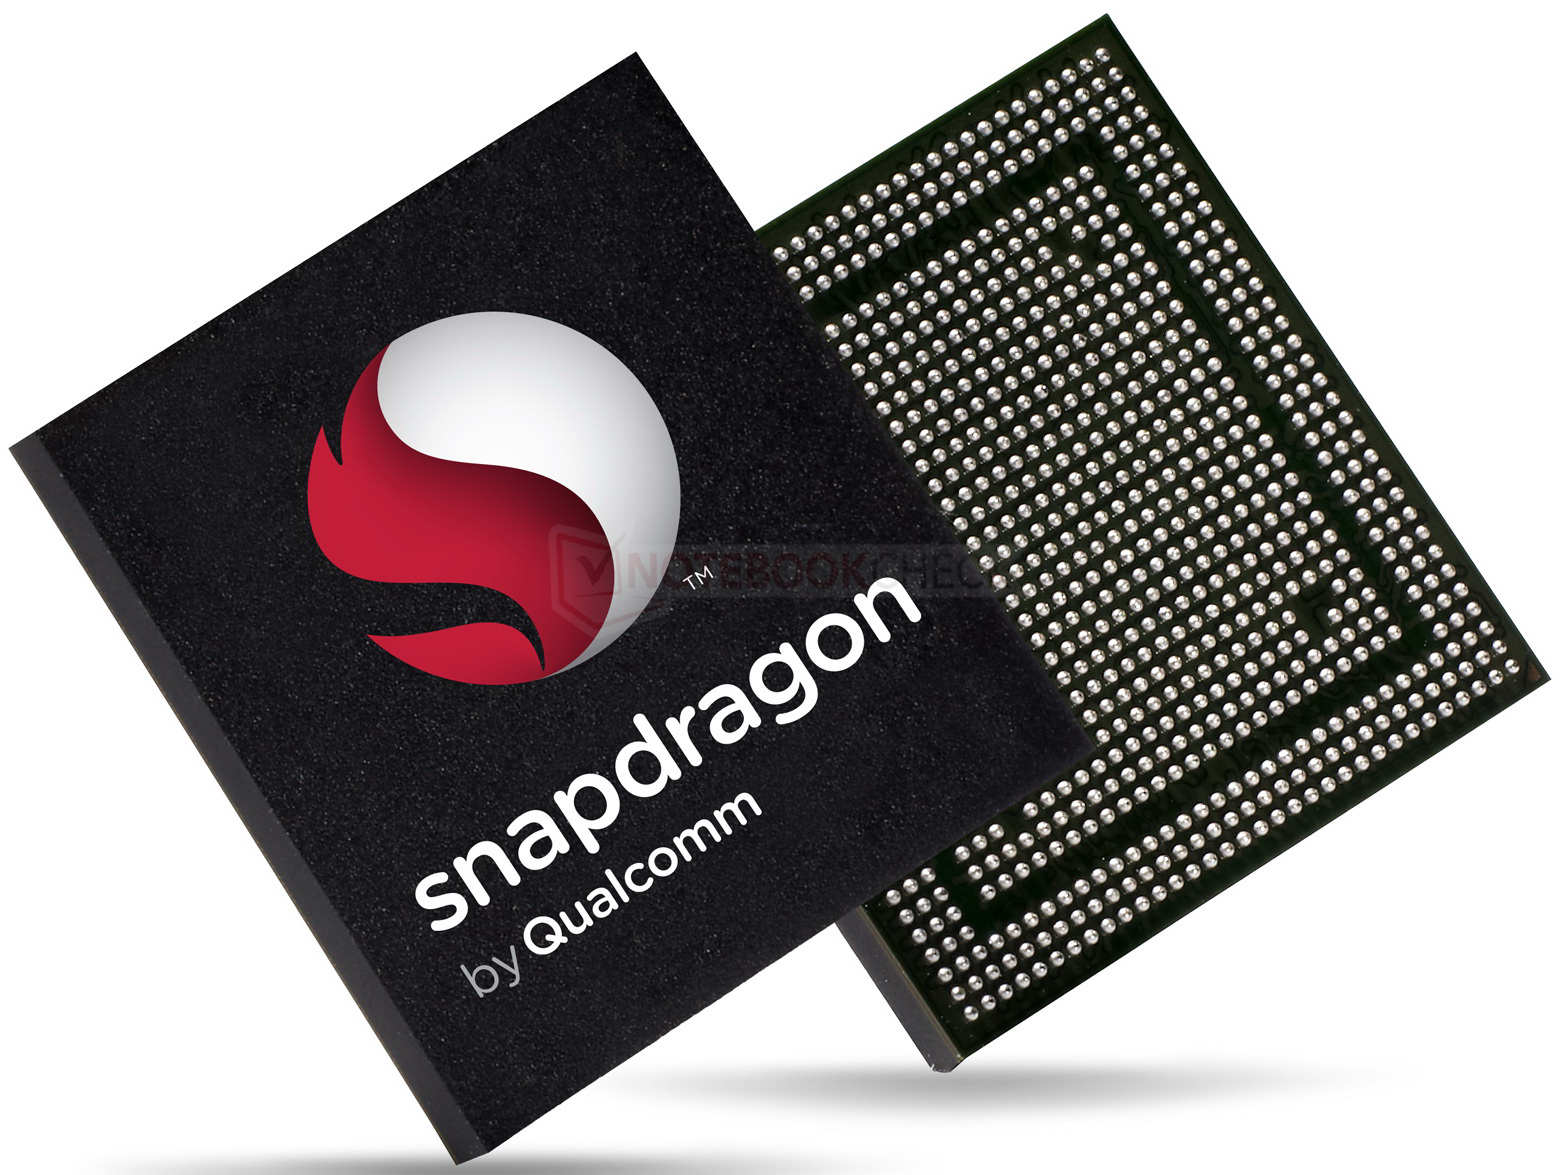 Demostración del Chip Snapdragon S4 Quad-Core de Qualcomm